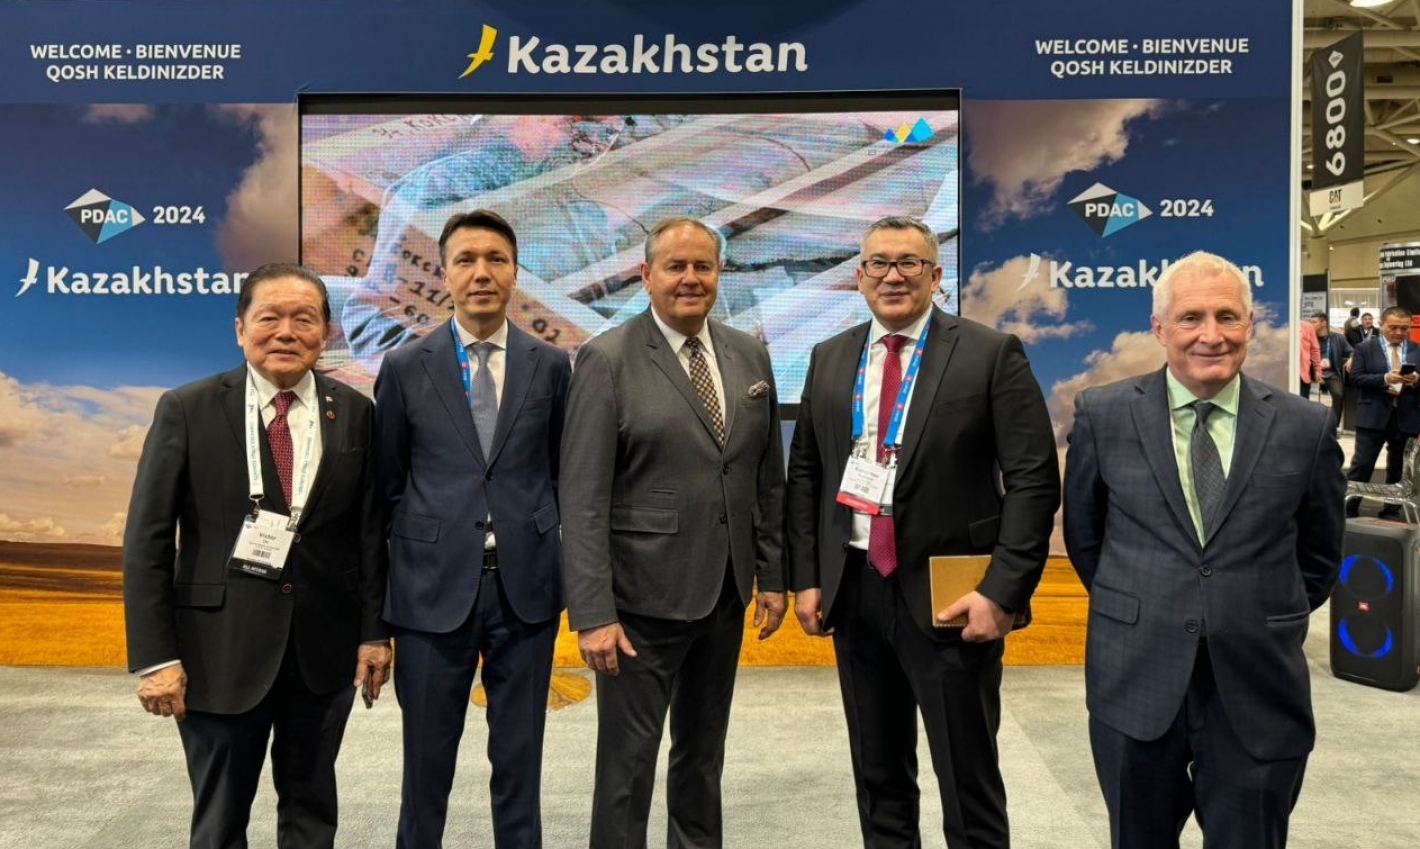 Kazatomprom is strengthening the Kazakh-Canadian partnership